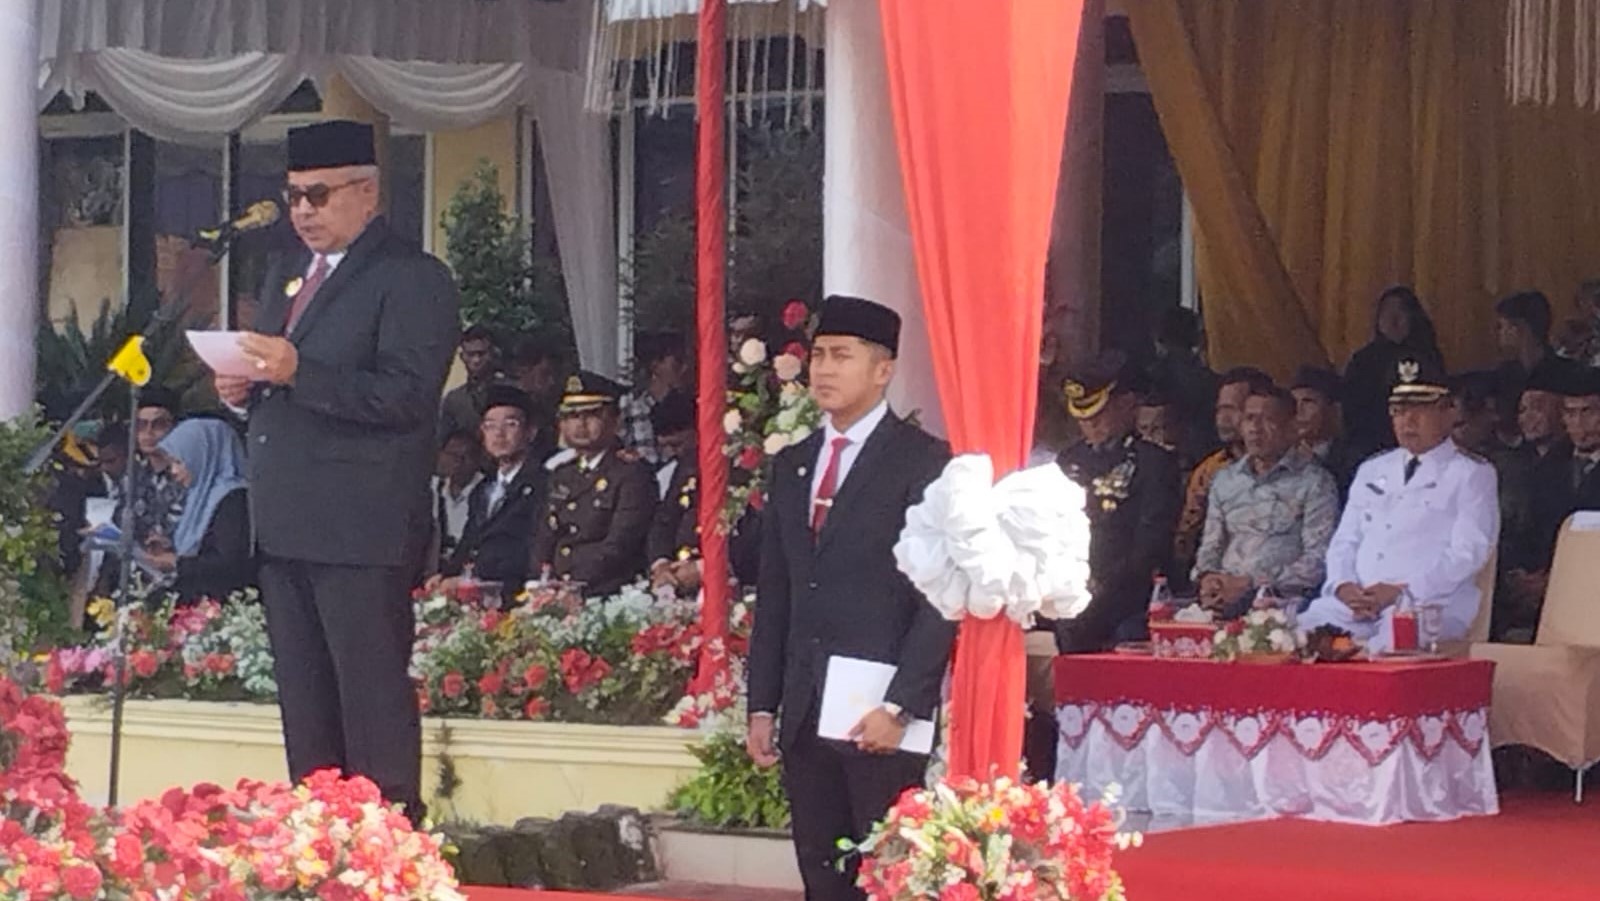 Di HUT Singkil, Pj Gubernur Aceh Ajak Masyarakat Terus Bersatu